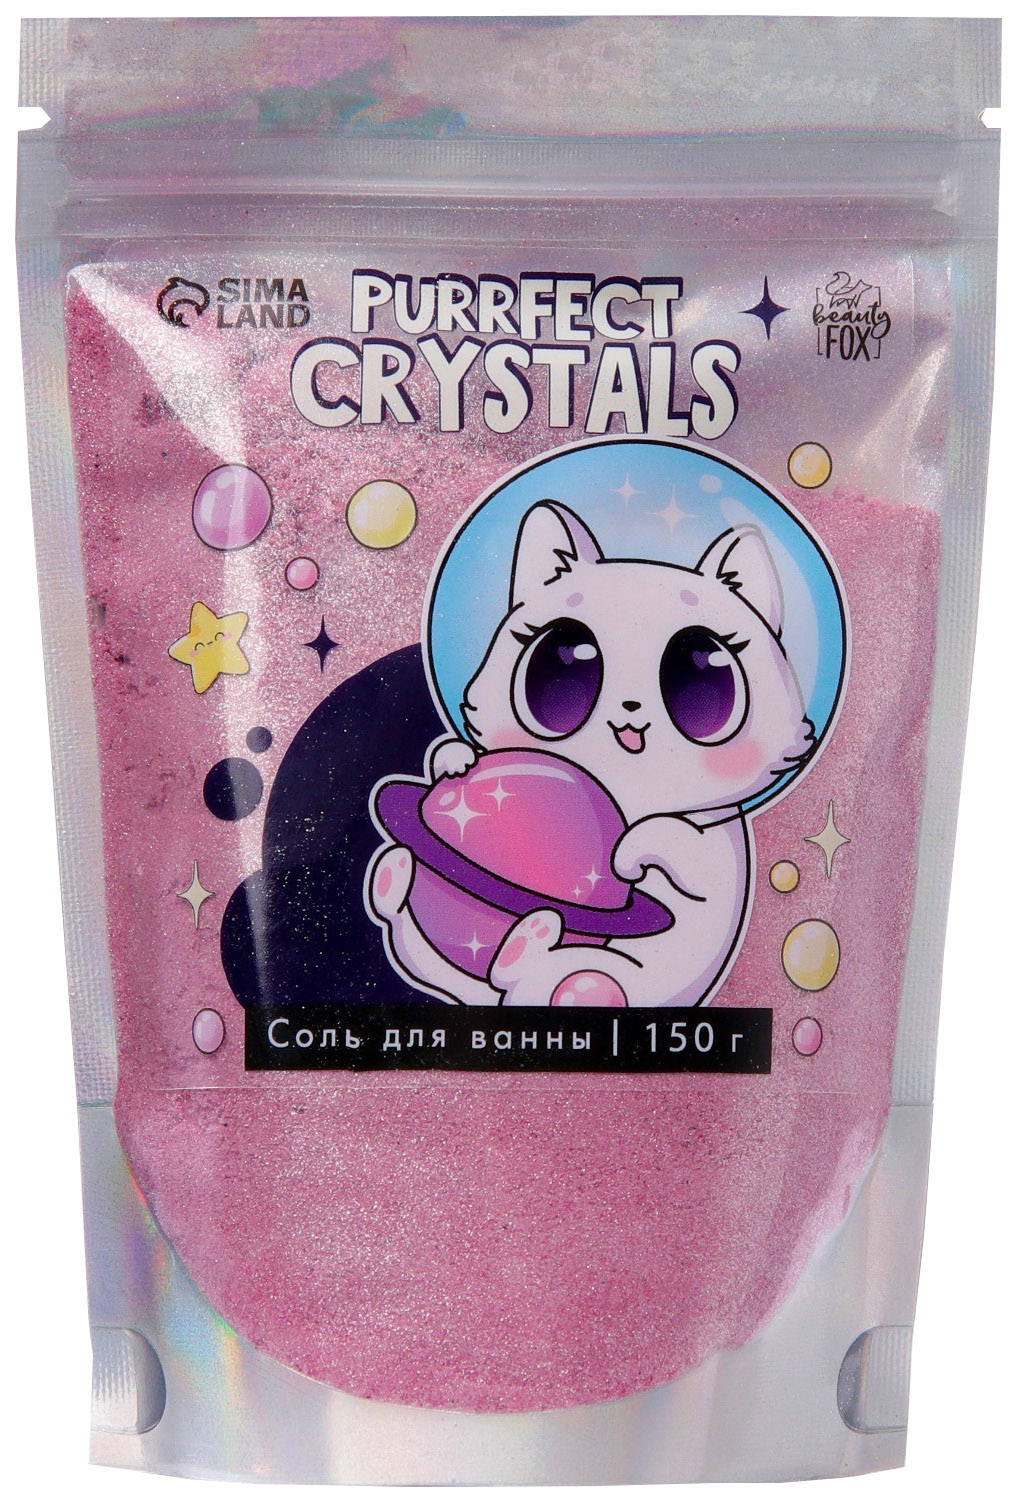 Соль для ванны-шиммер Purrfect, 150 г 4791195 yummmy розовый магический шиммер для ванны rose bath shimmer